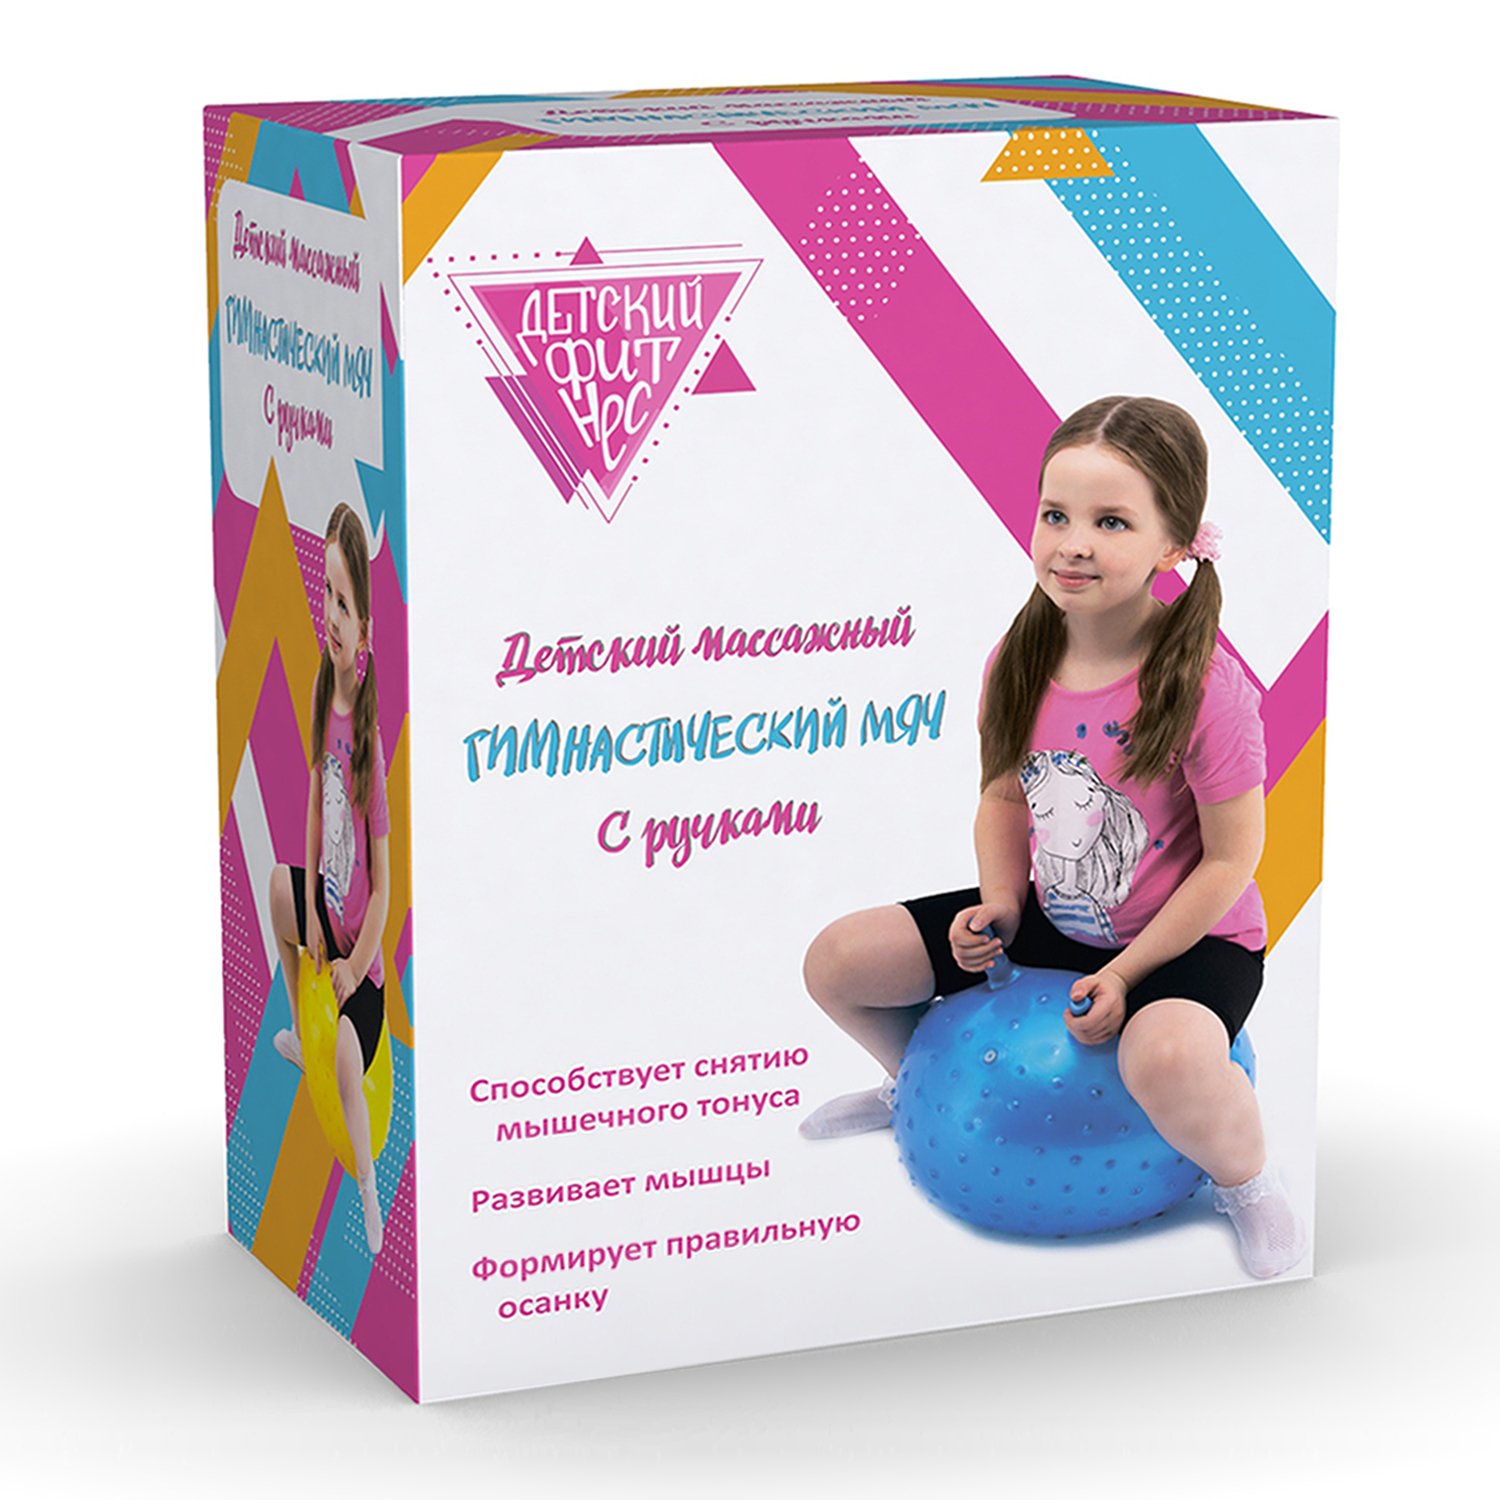 Мяч массажный гимнастический детский Bradex Фиолетовый DE 0537 - фото 3